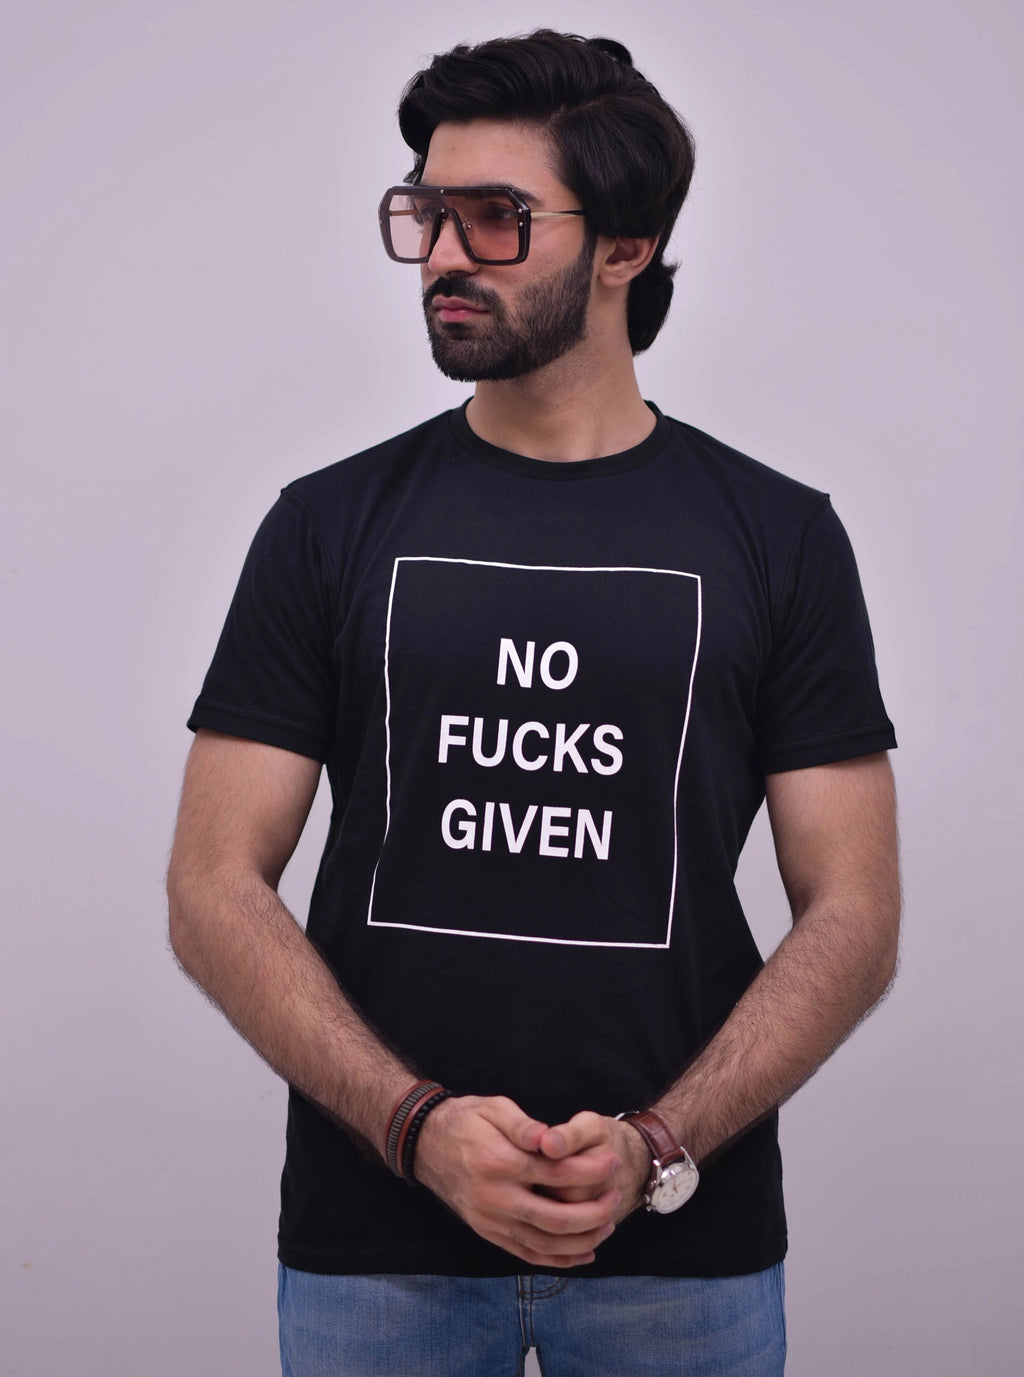 No Fucks Given - Basic Black Premium Cotton T-Shirt